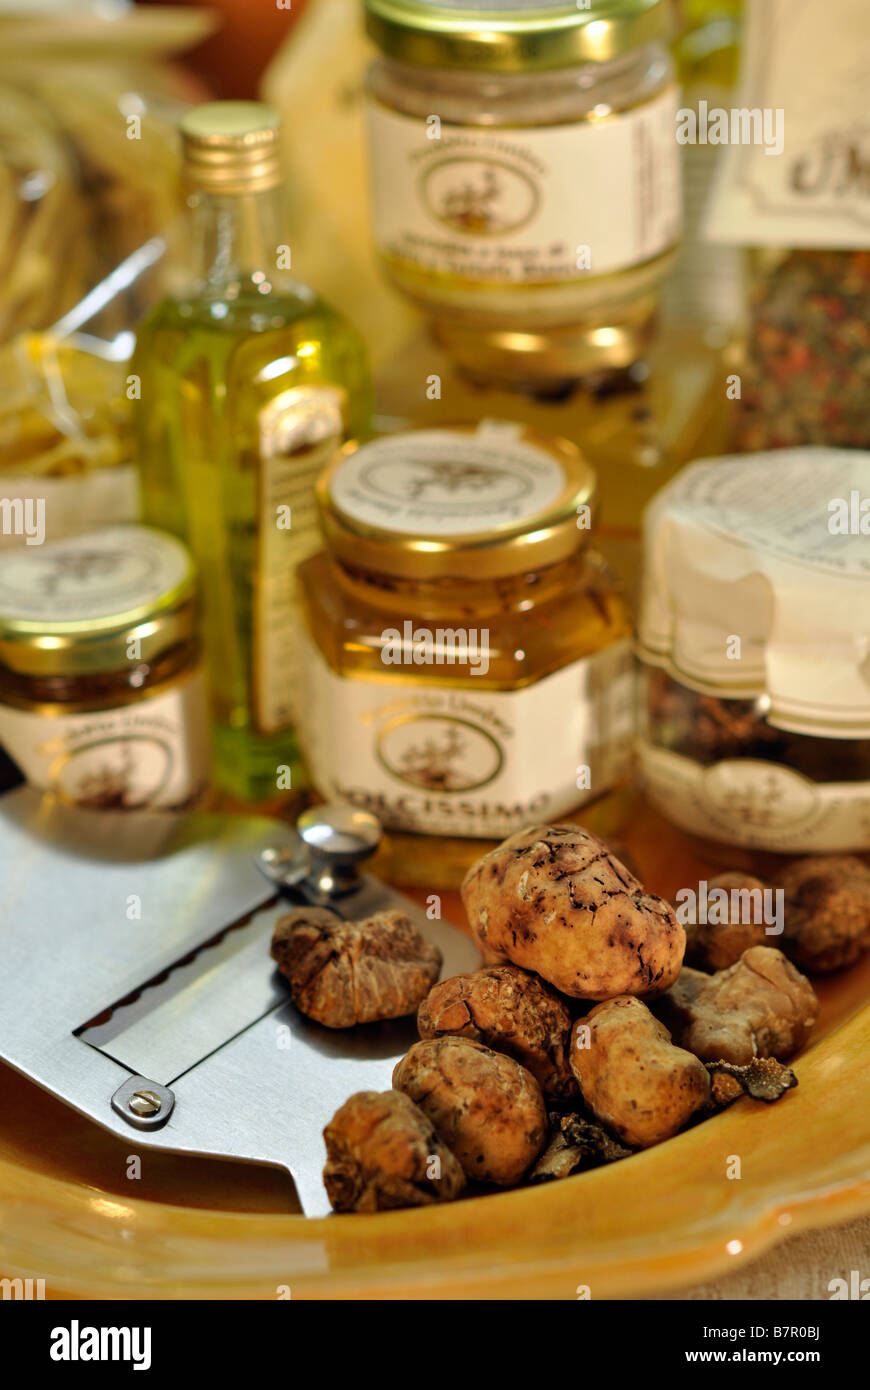 La truffe blanche fraîche avec les aliments produits à l'Ombrie avec saveur truffe : pâtes, beurre, miel et truffe de la lame de couteau Banque D'Images